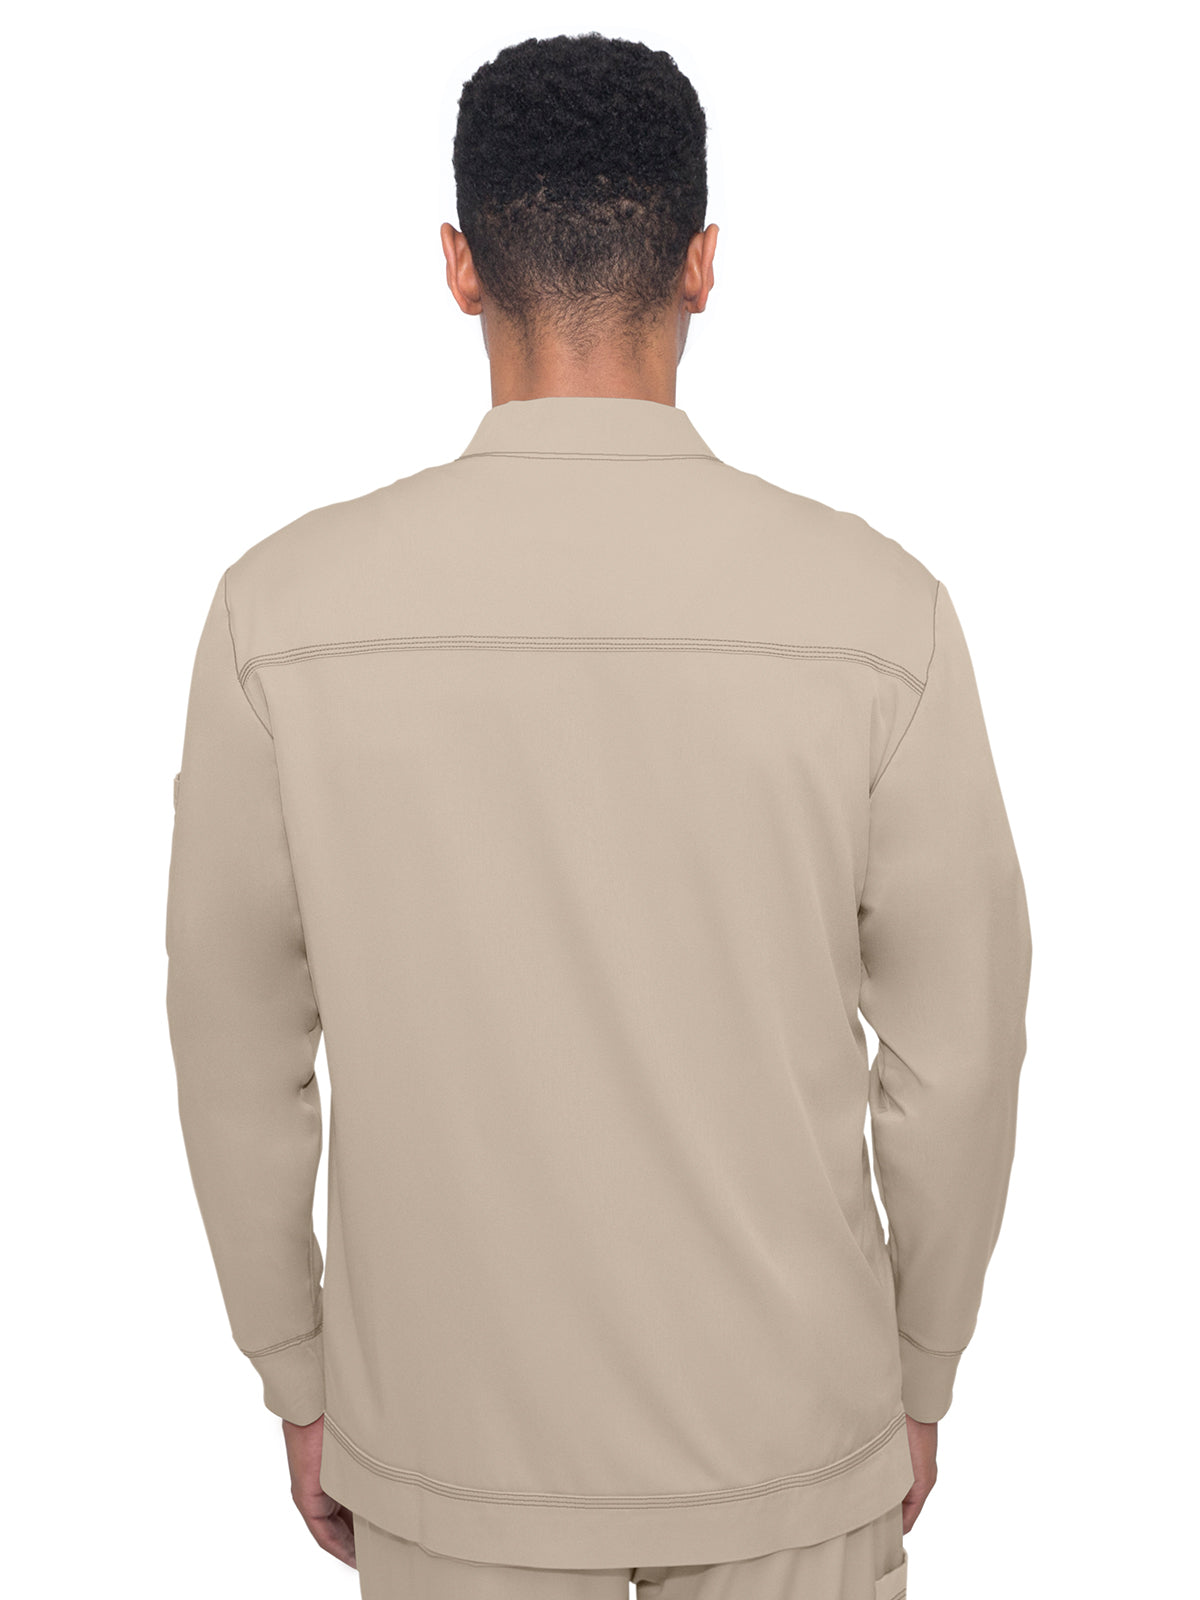 Men's Zip Closure Scrub Jacket - 5590 - Khaki